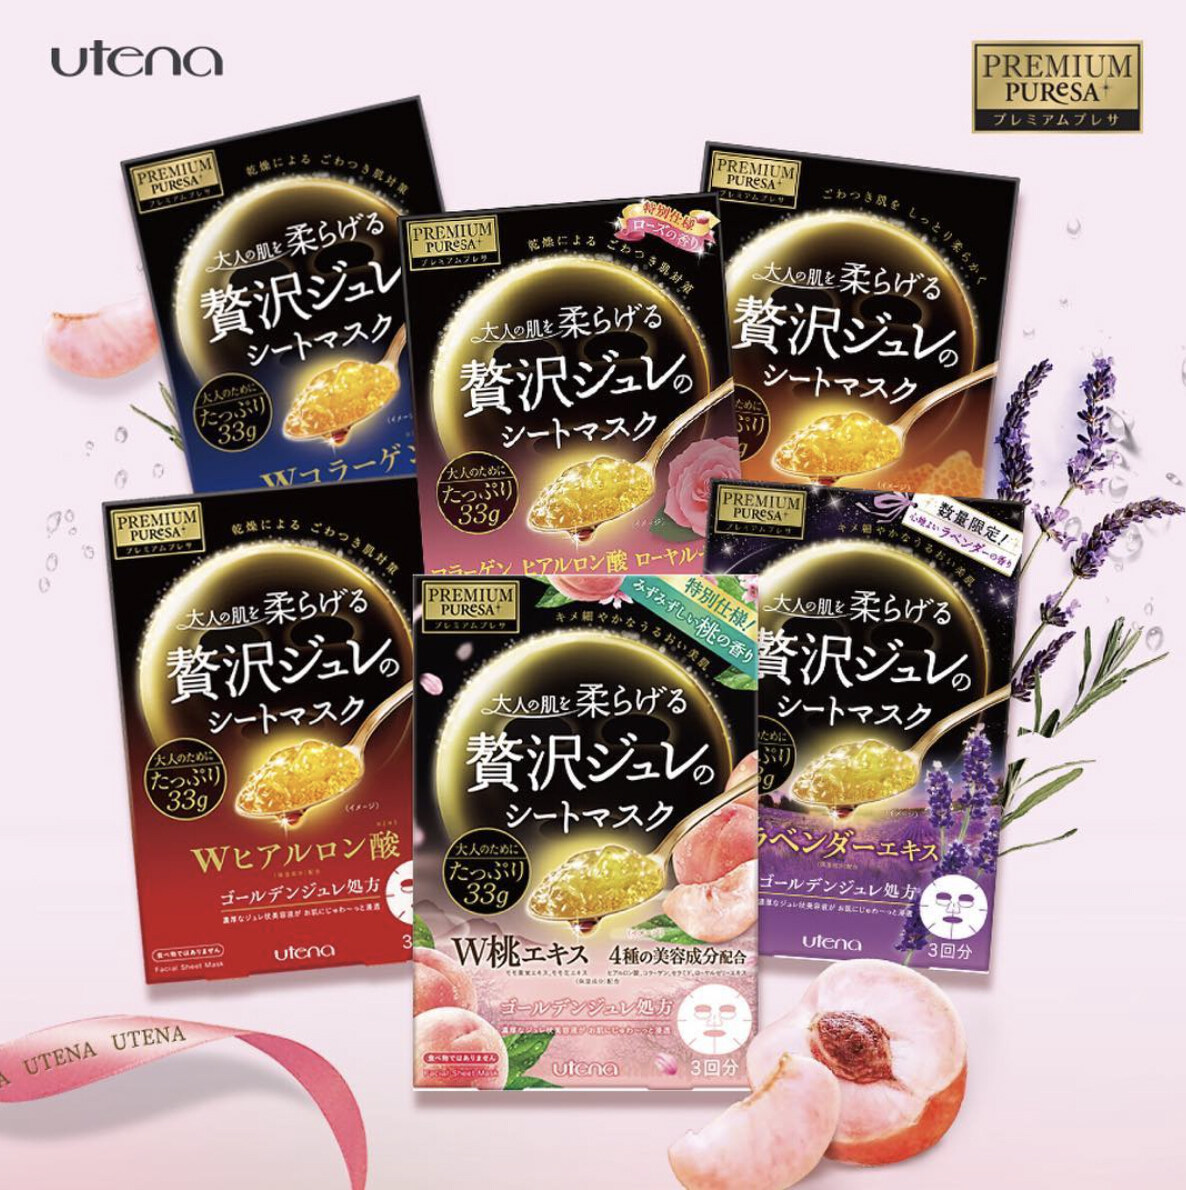 Utena的黃金啫喱面膜系列在日本一推出時已好評如潮。